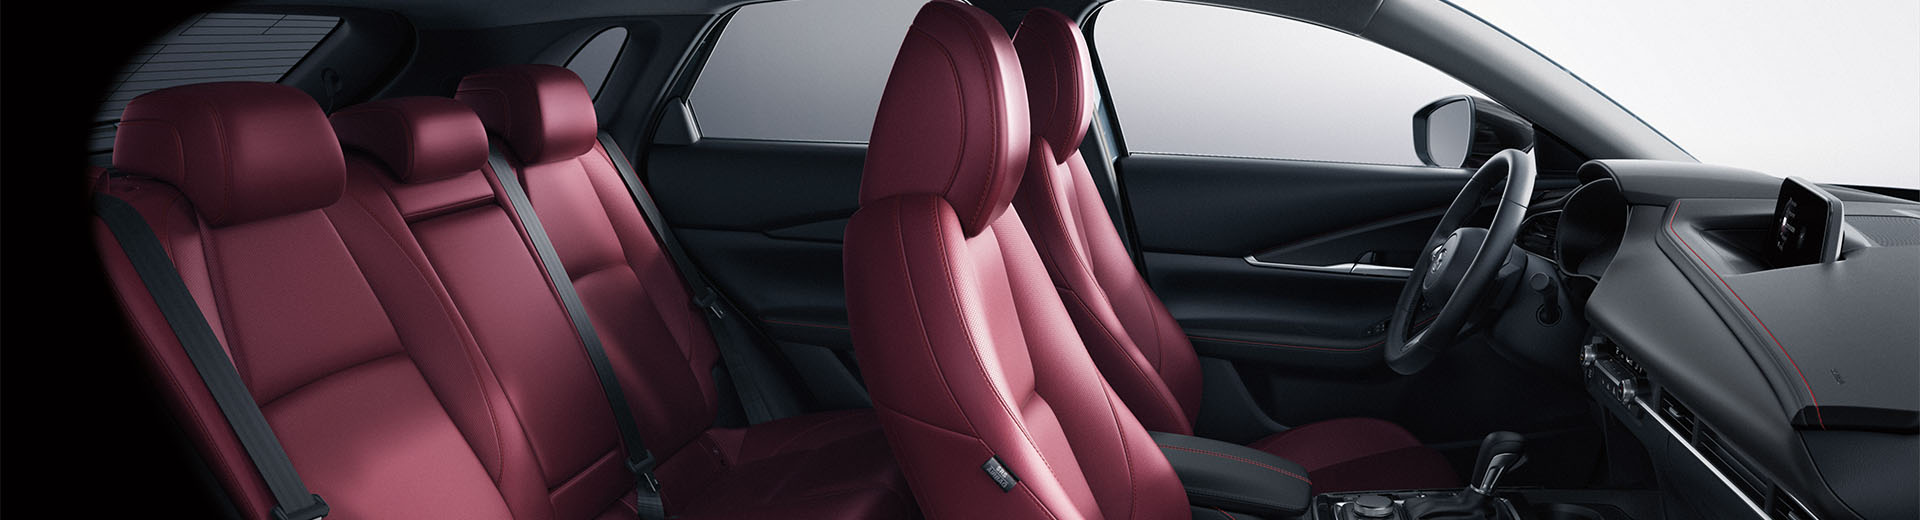 New 2022 Mazda CX-30 Interior